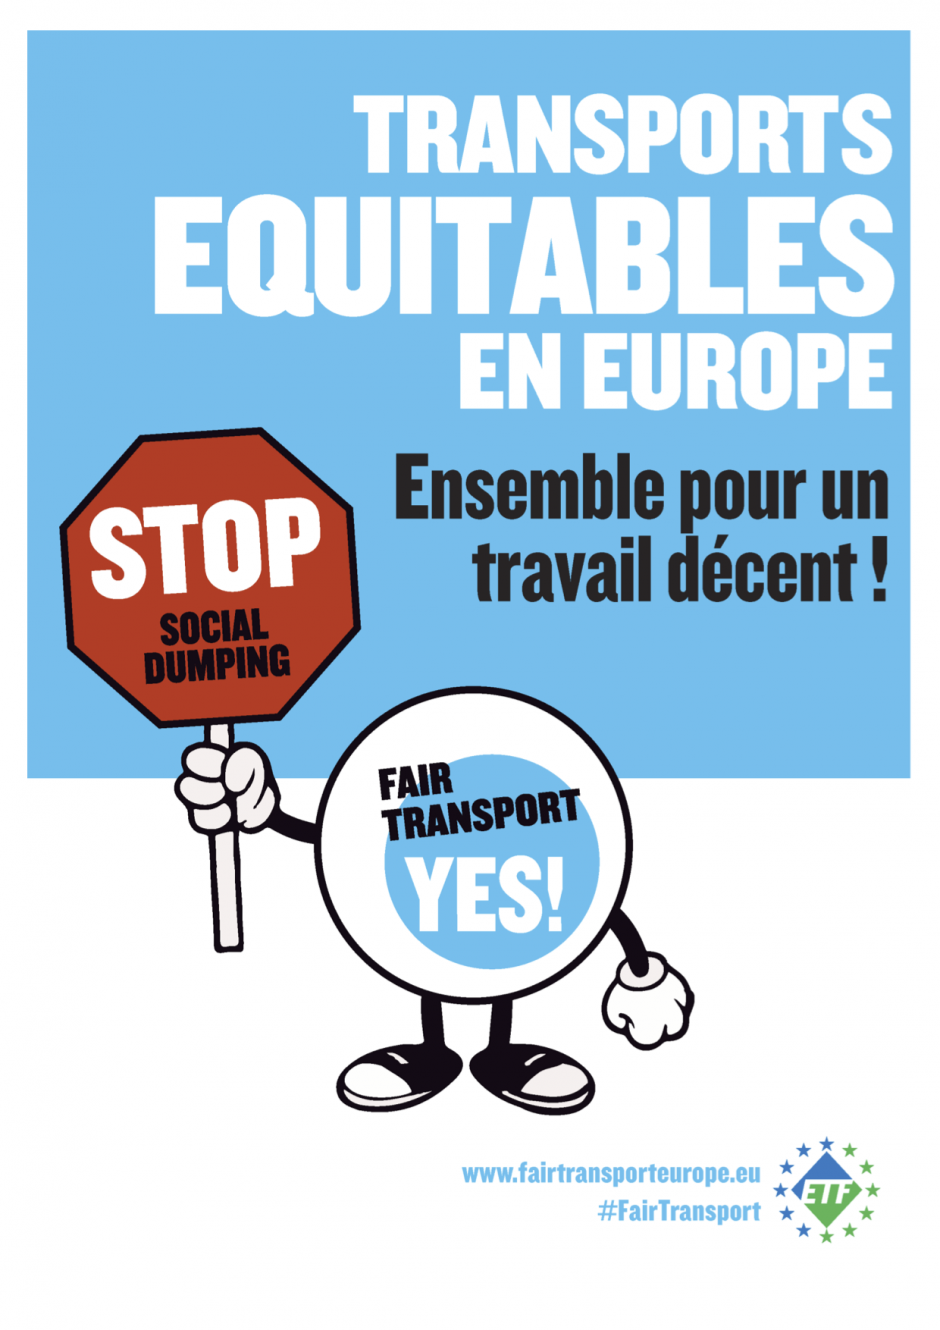 Transports équitables en Europe. Ensemble pour un travail décent !